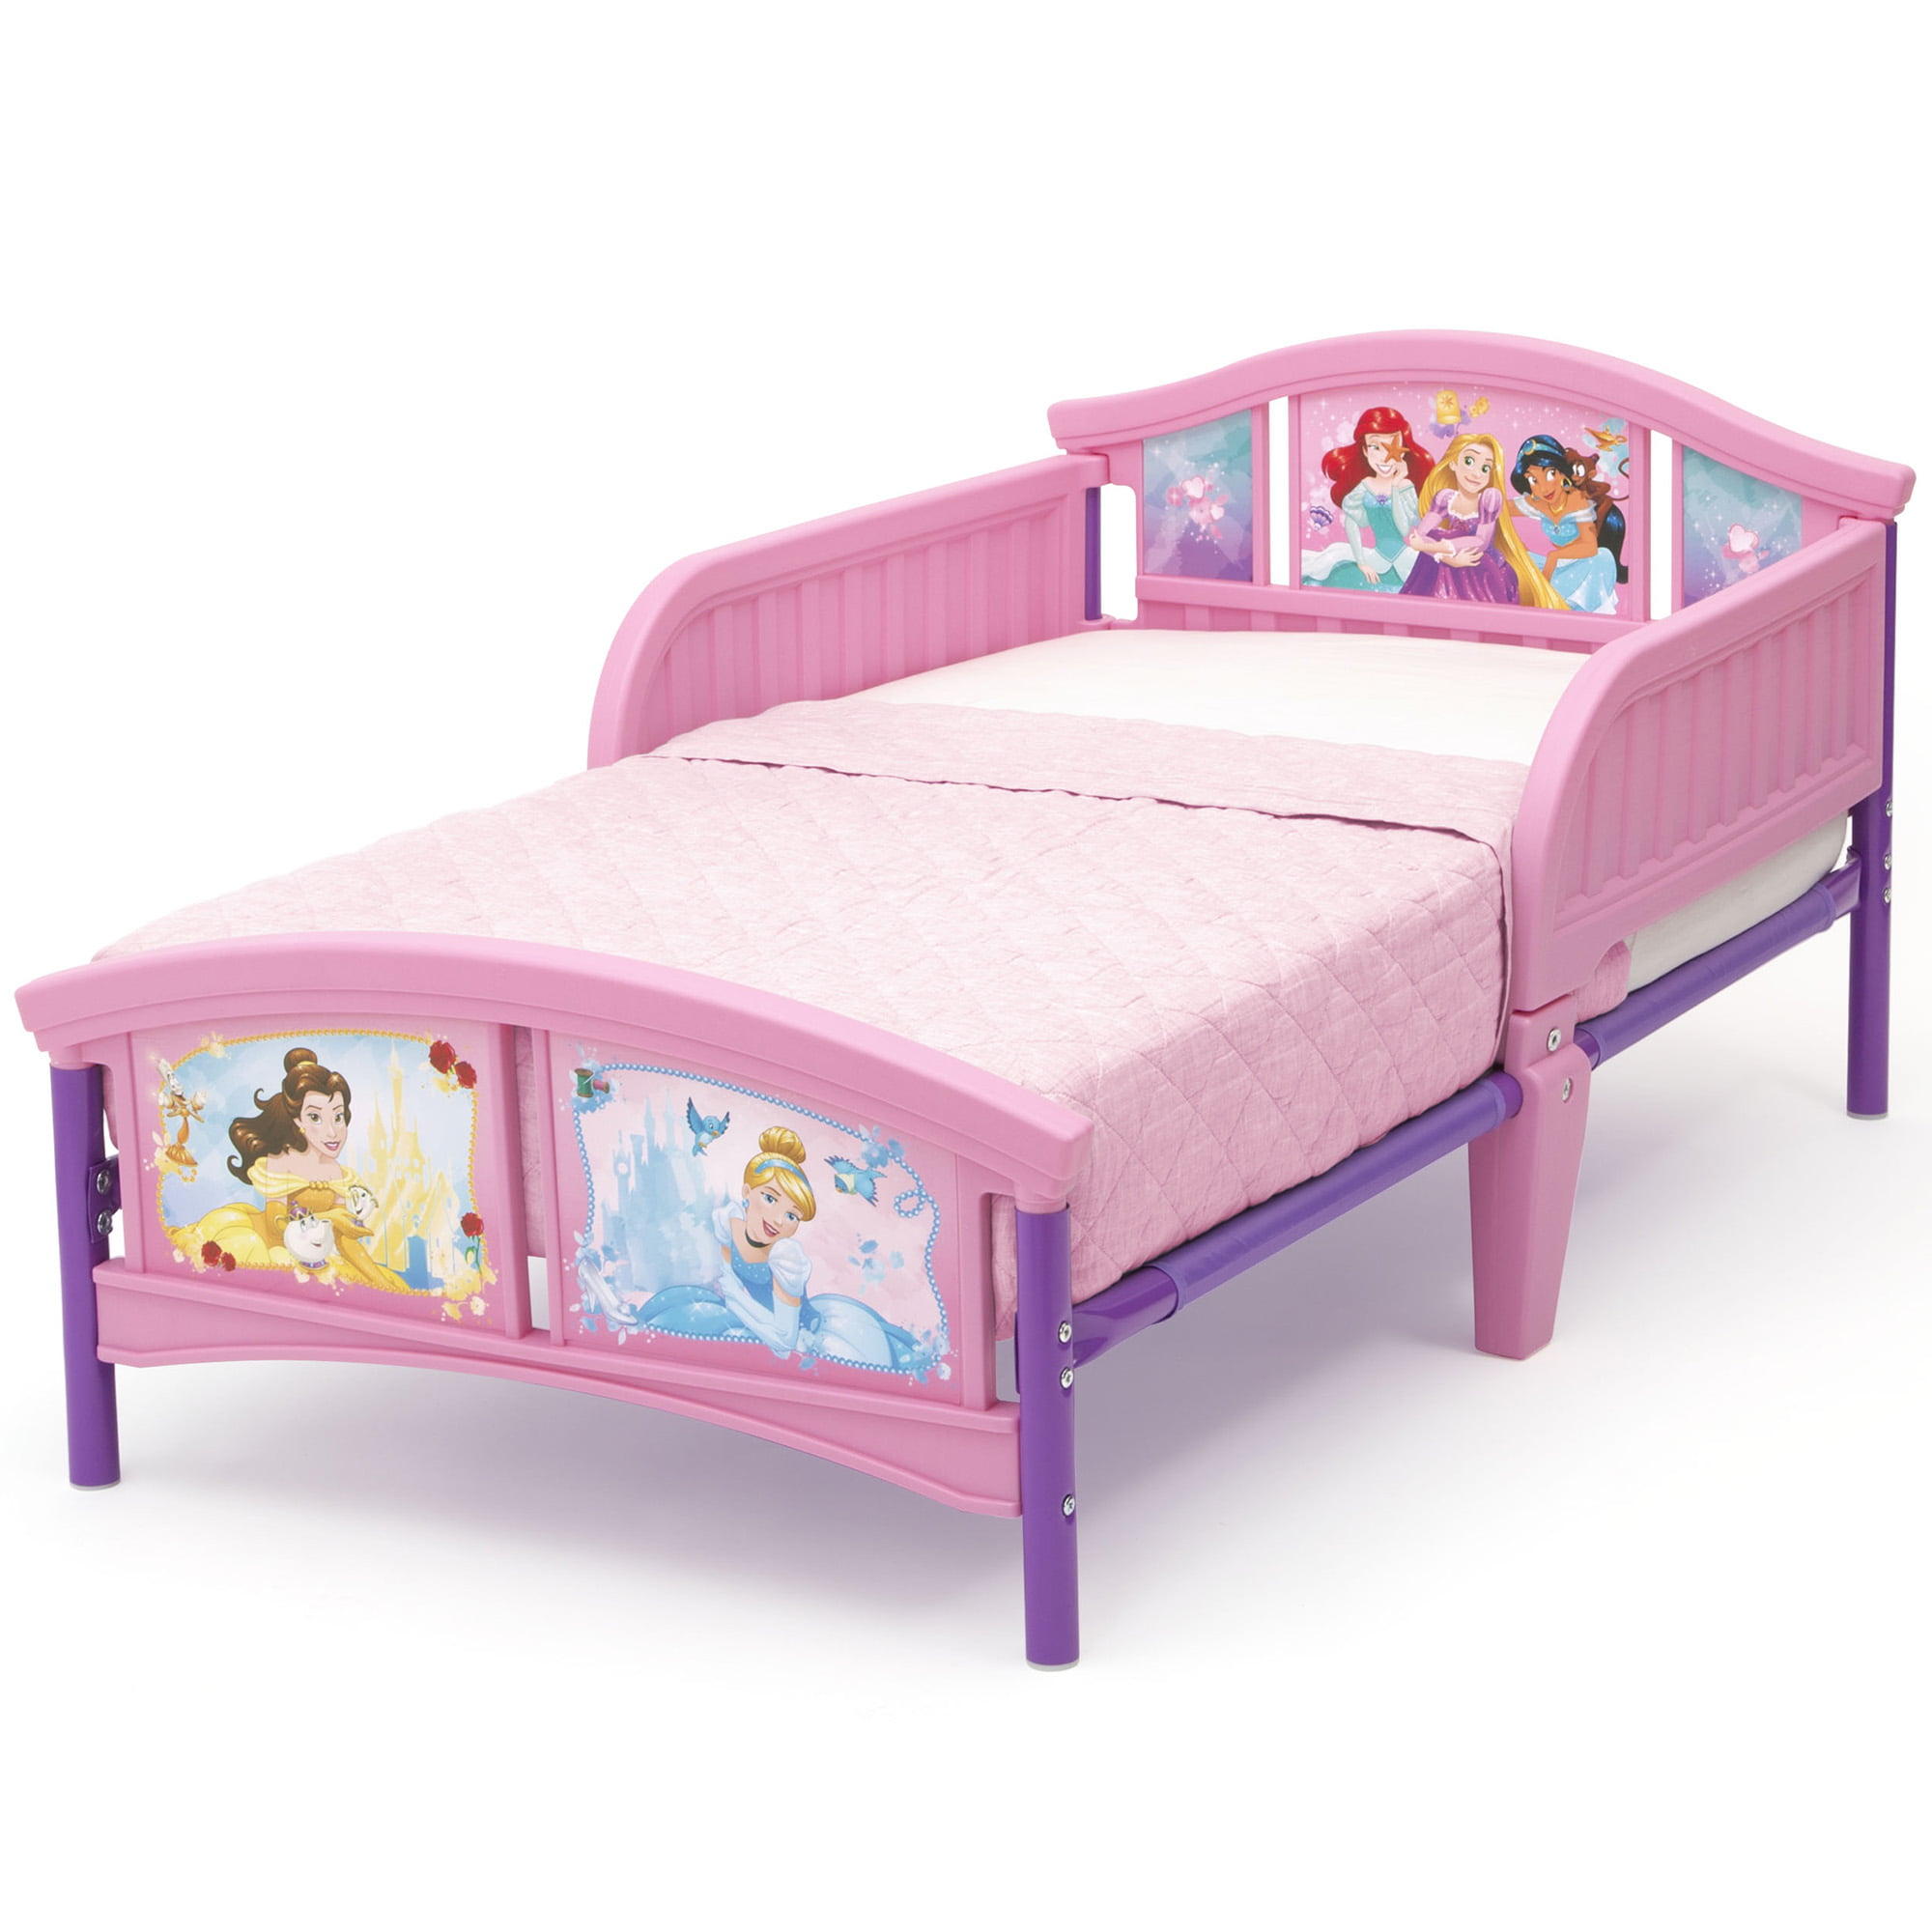 children's bed and mattress deals